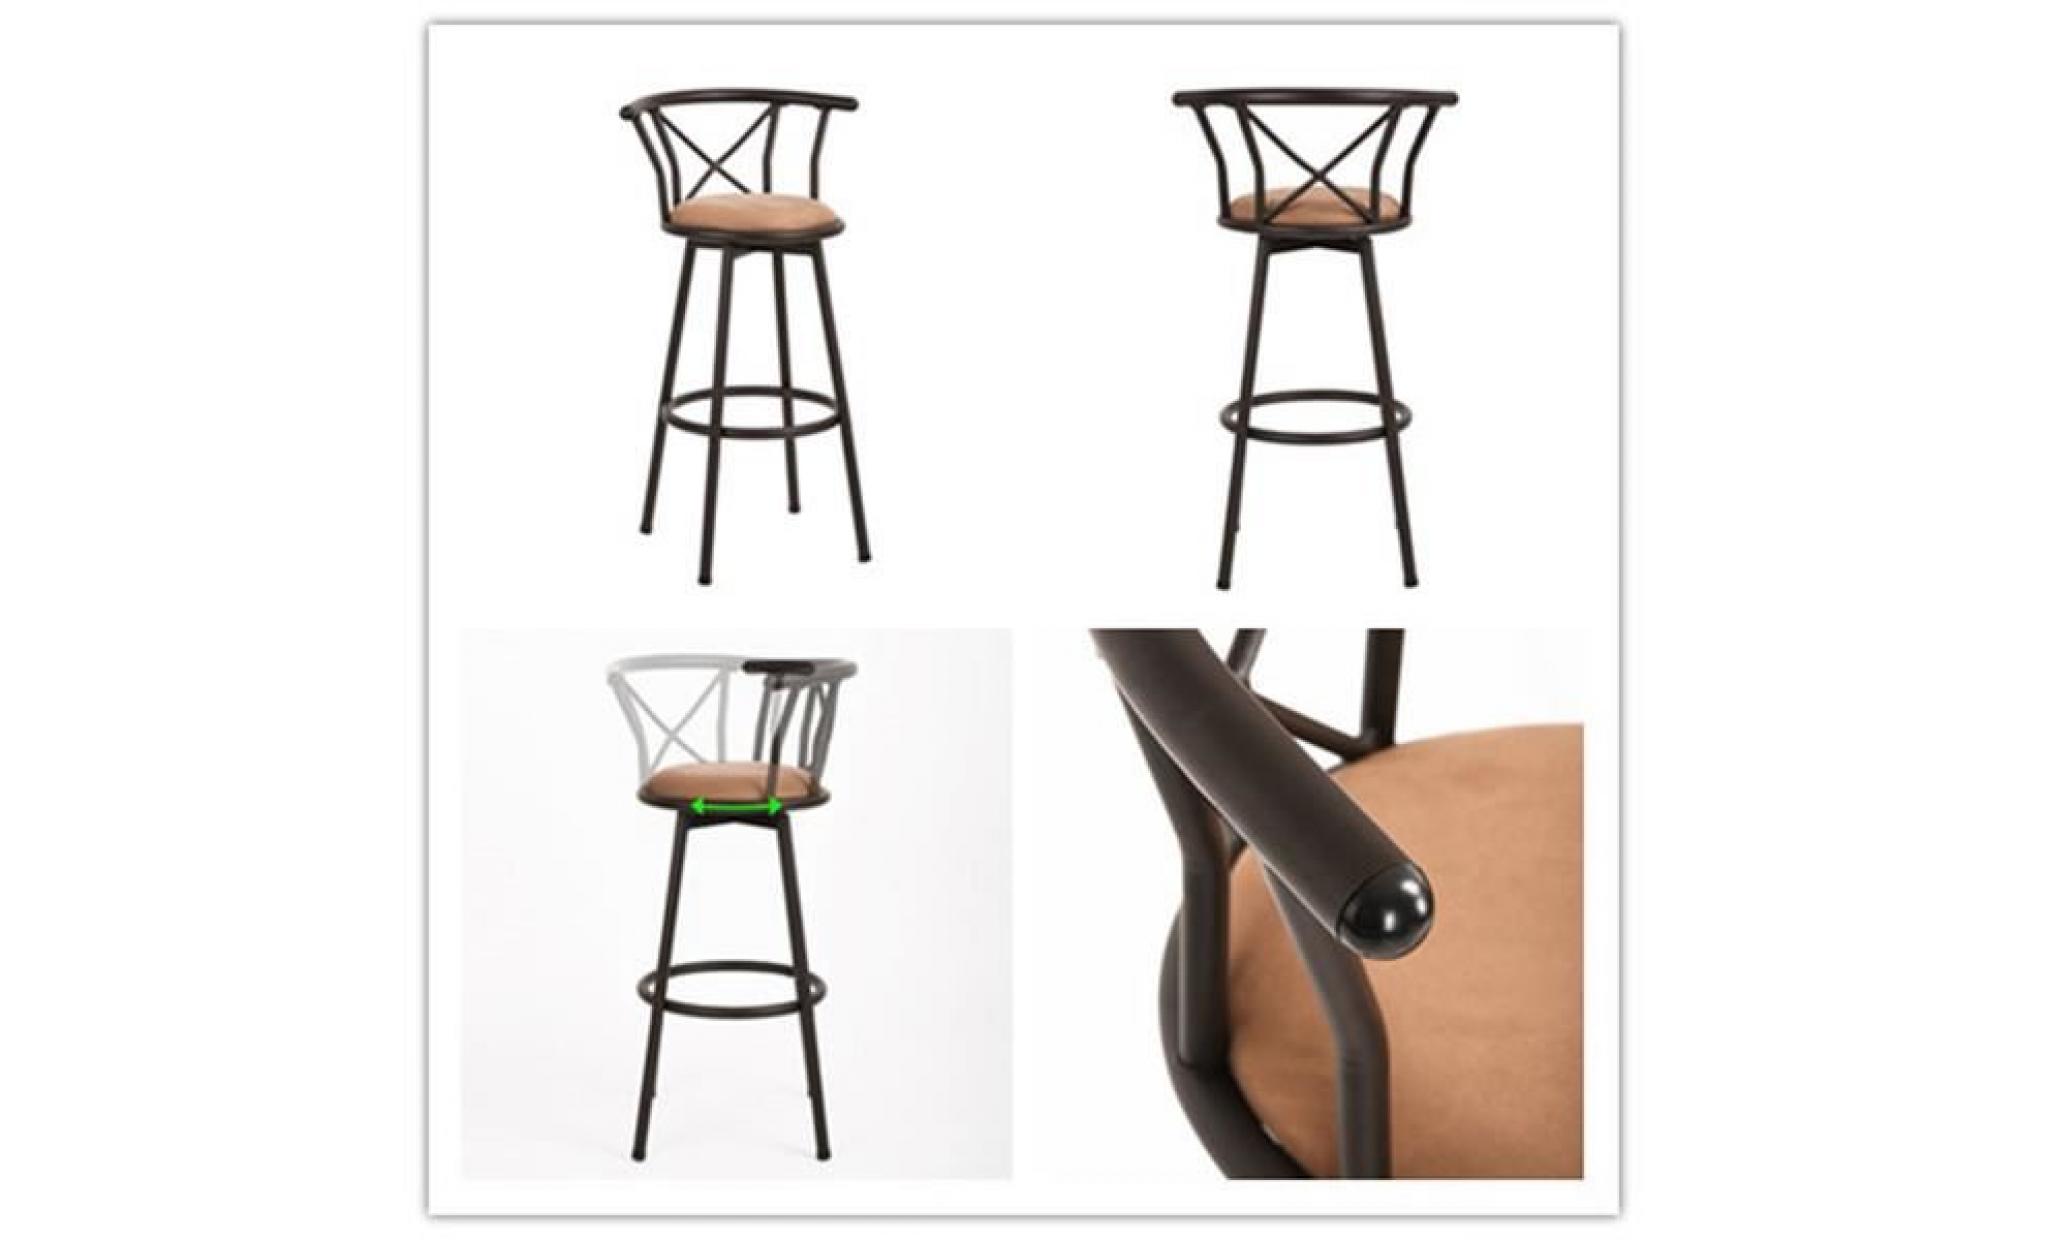 furniturer lot de 2 tabourets de bar cuisine scandinaves chaises de bar haute avec repose pieds design gris en bois et plastique pas cher